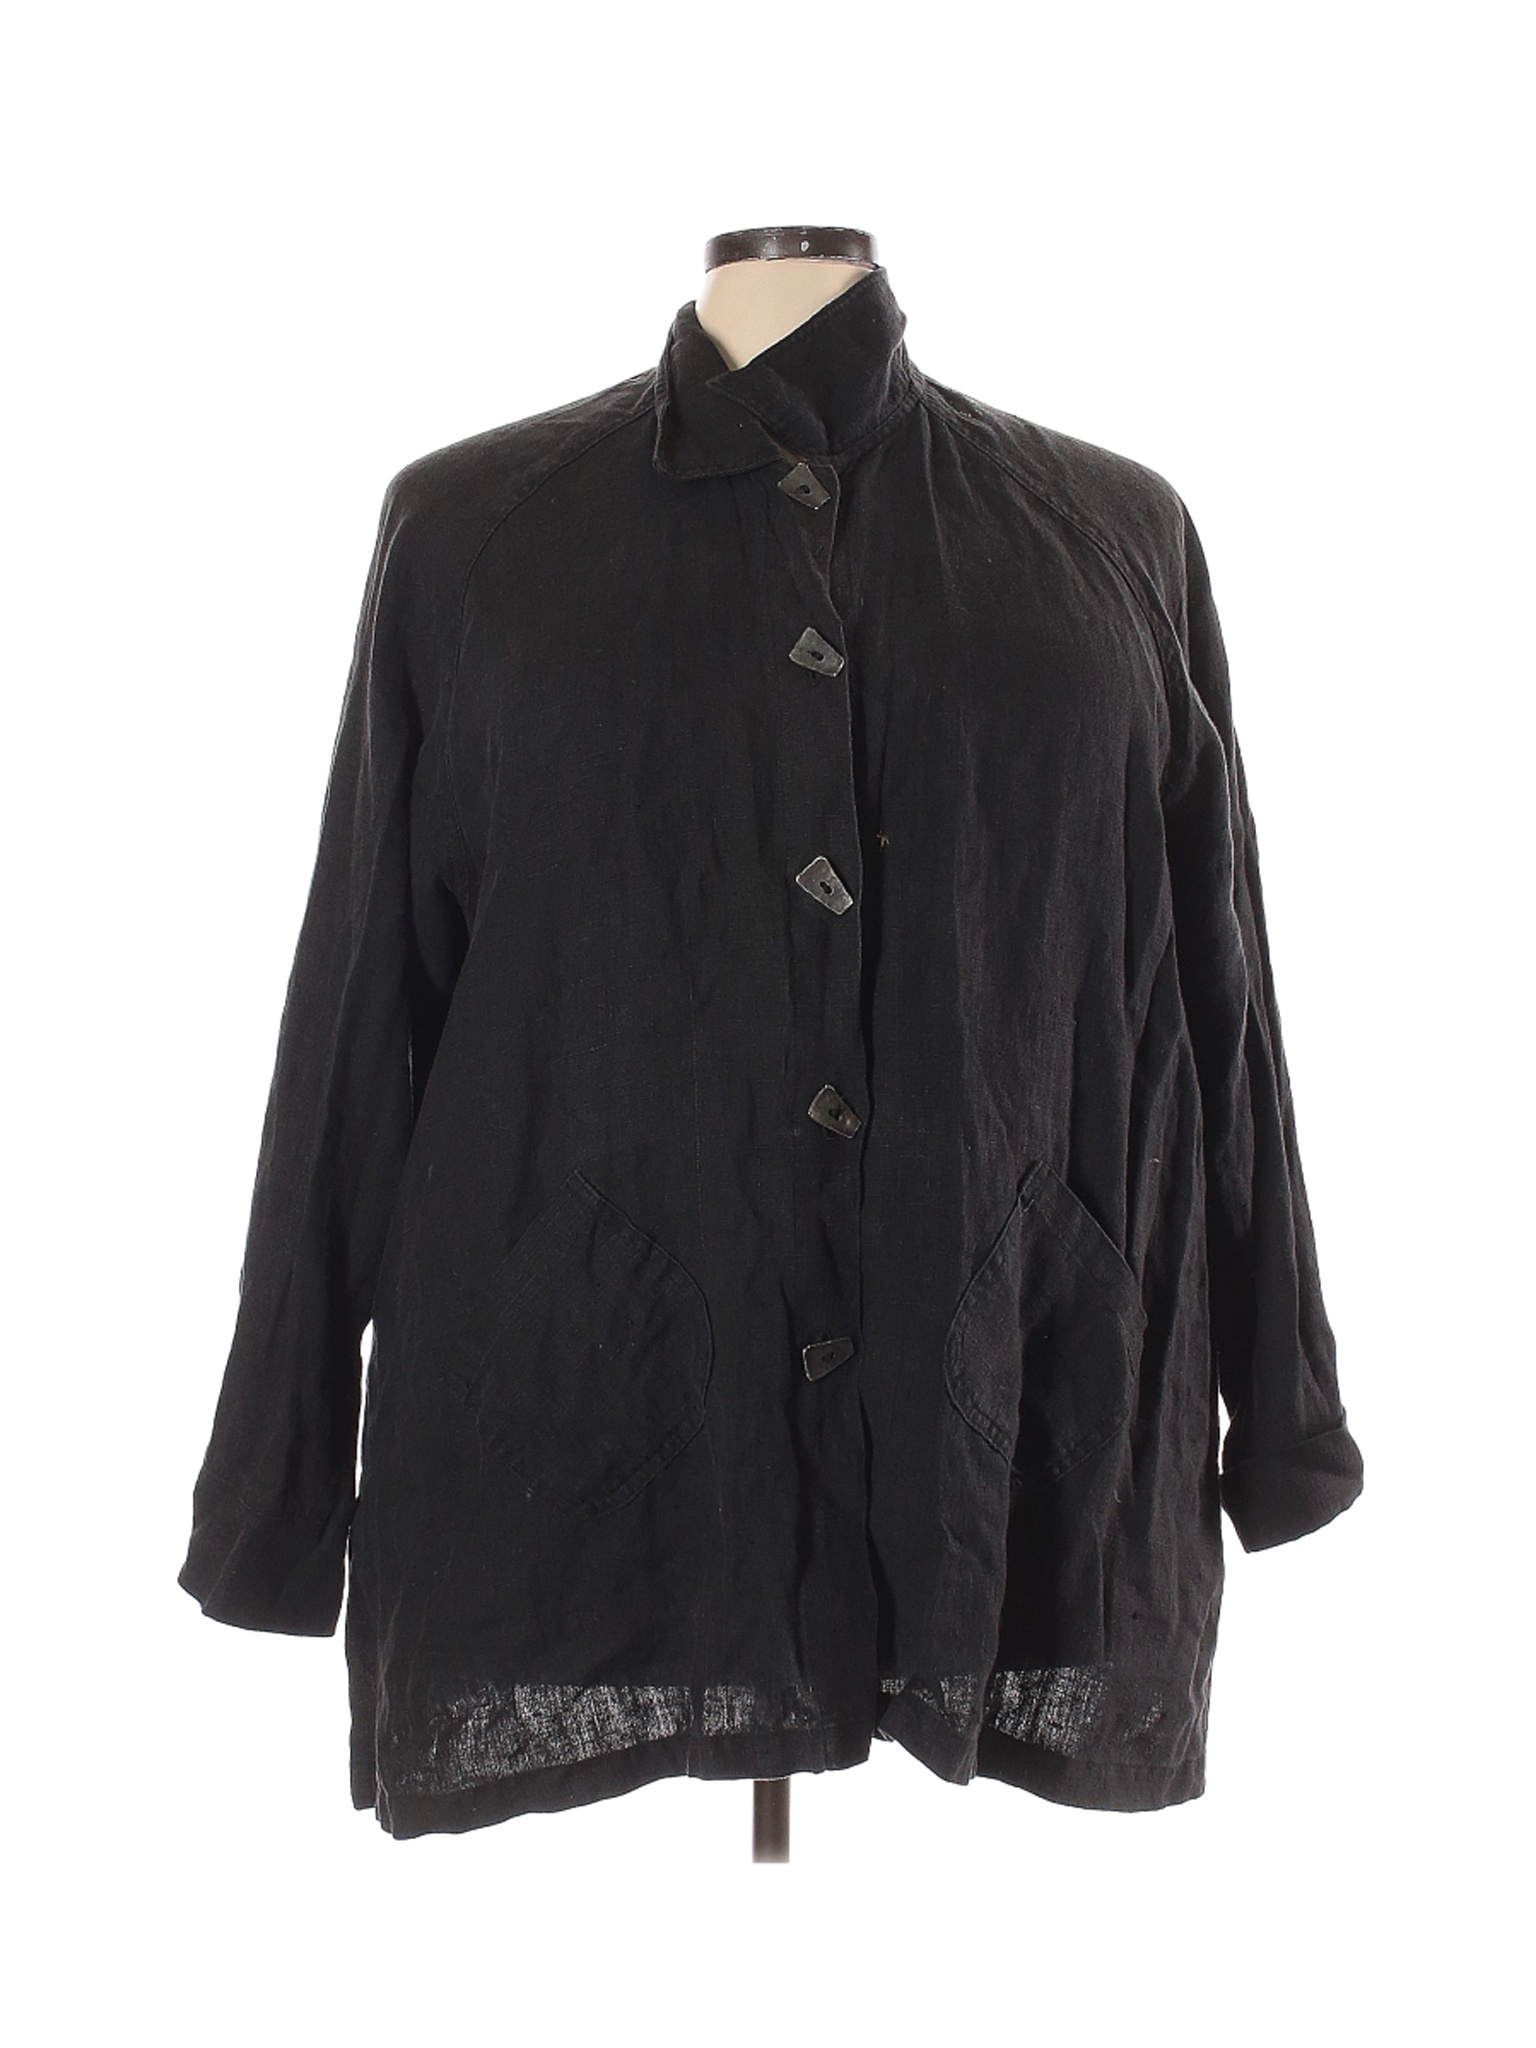 J.jill Women Black Jacket 3X Plus | eBay